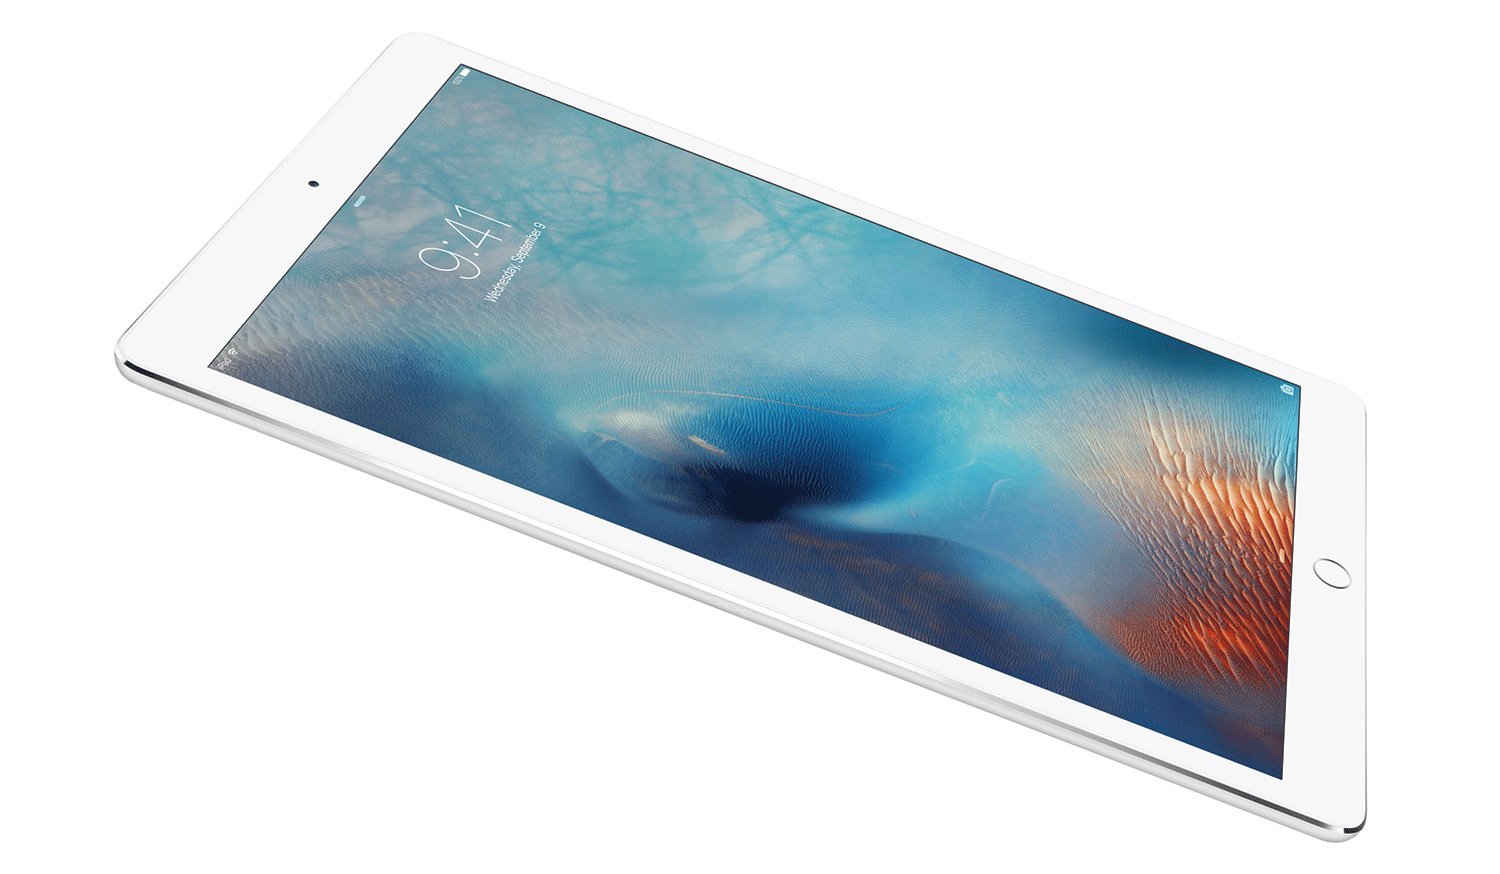 Apple iPad Pro (32GB, Wi-Fi, Silver) 12.9in Tablet (Renewed)